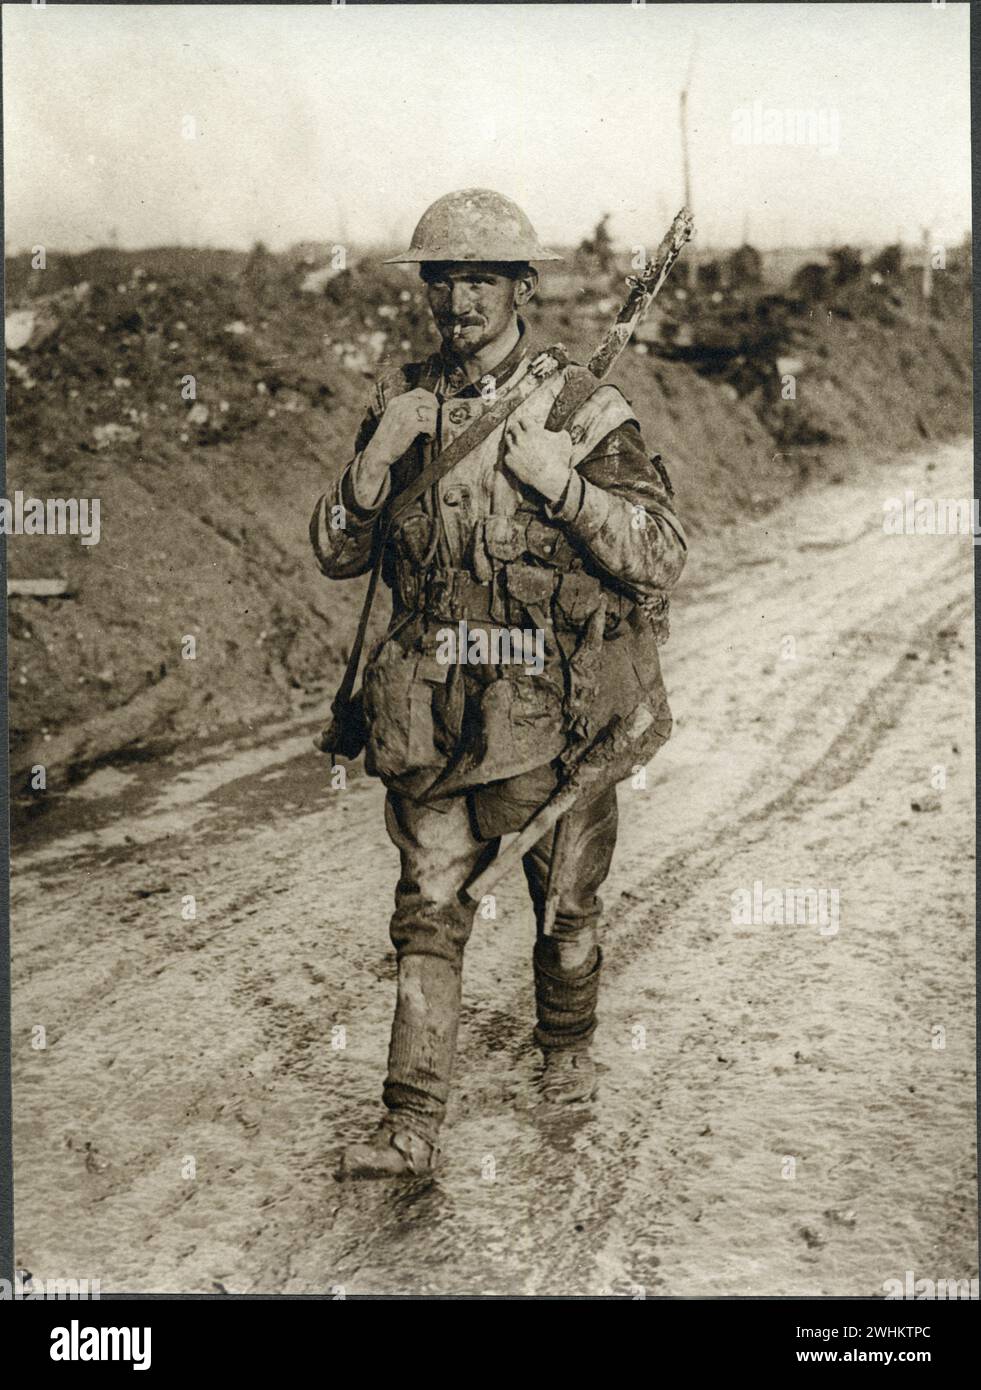 Privatmann Donald Johnston McKinnon, No. 7 Platoon, 73. Bataillon, kanadische Armee, Rückkehr von der Front in Frankreich. Bilder der kanadischen Streitkräfte im Ersten Weltkrieg in Frankreich/1. März 1917 Stockfoto